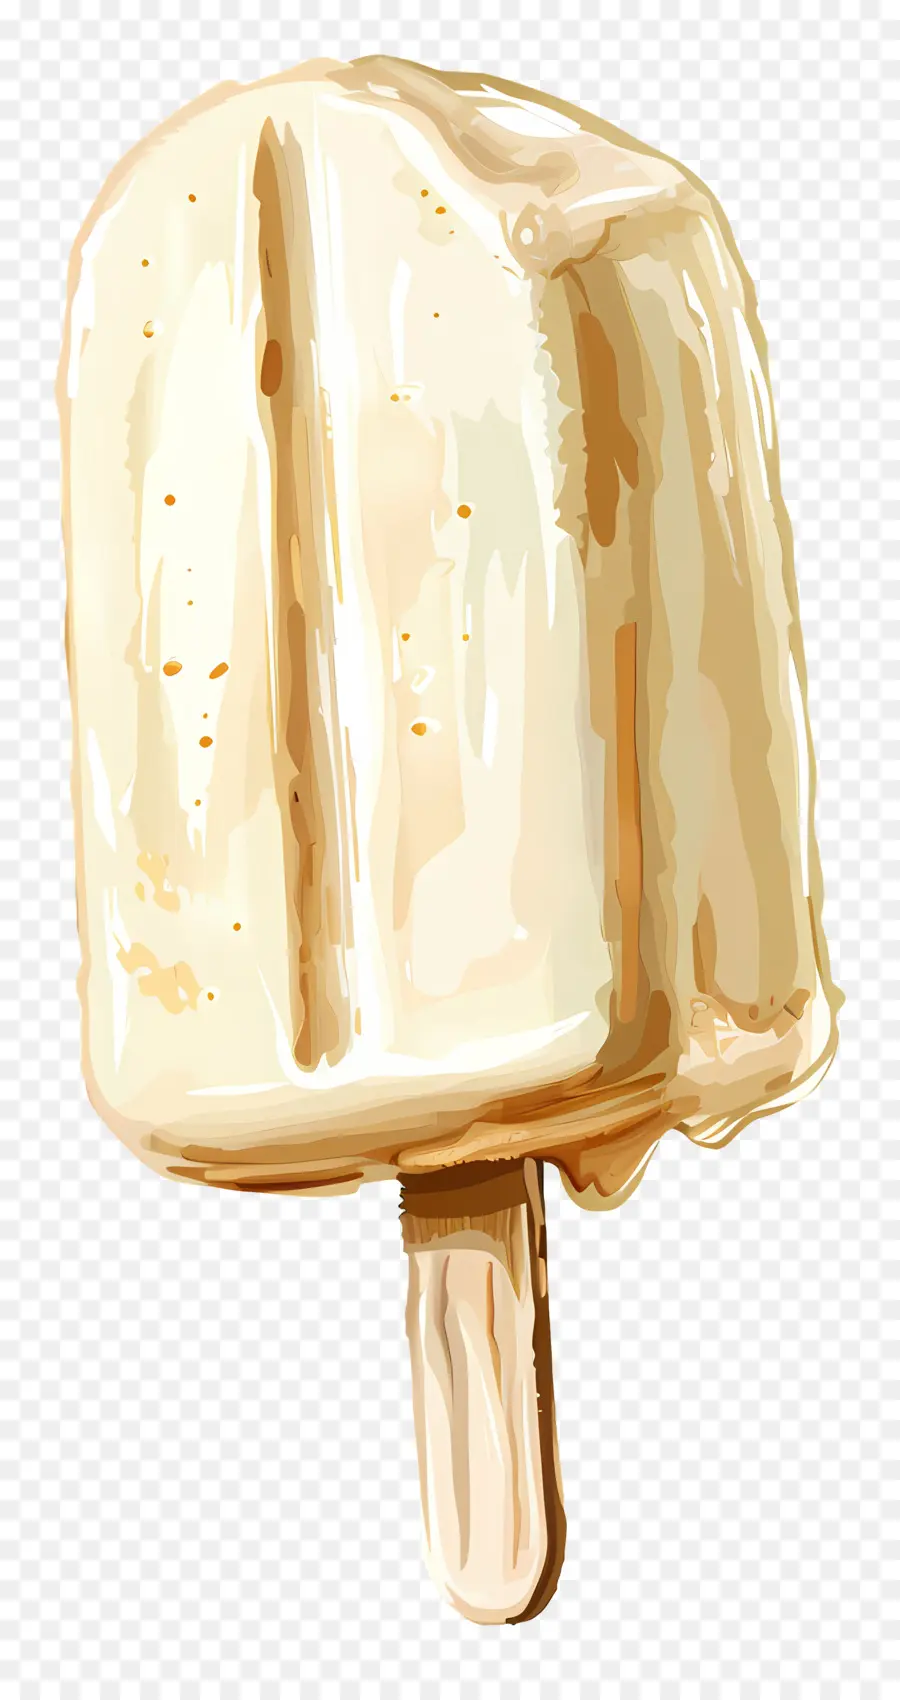 gelati gelati alla vaniglia gelati cioccolato cioccolato - Giovano gelato alla vaniglia con gocce di cioccolato